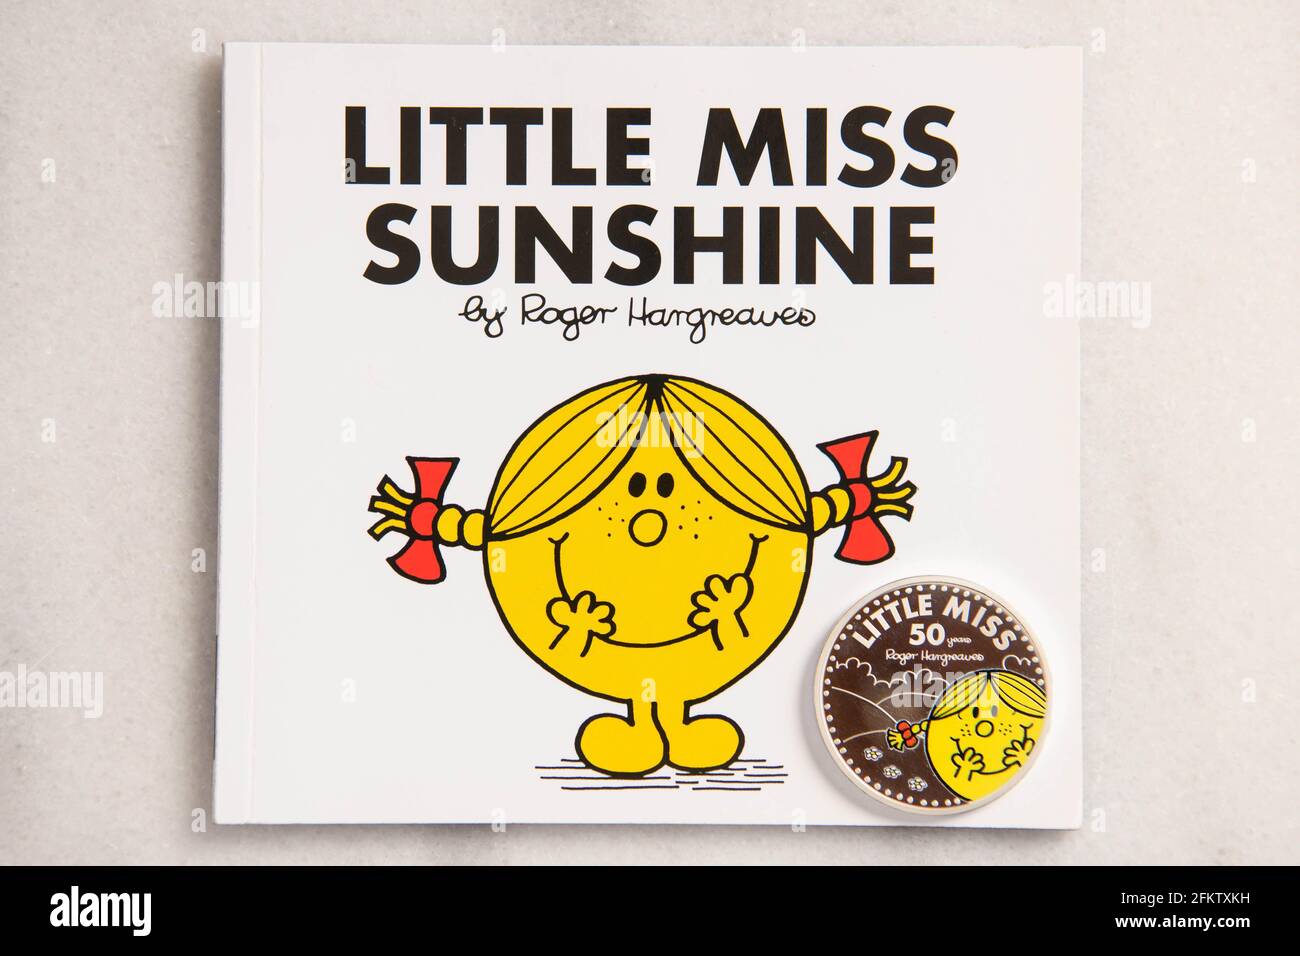 little miss sunshine characters description